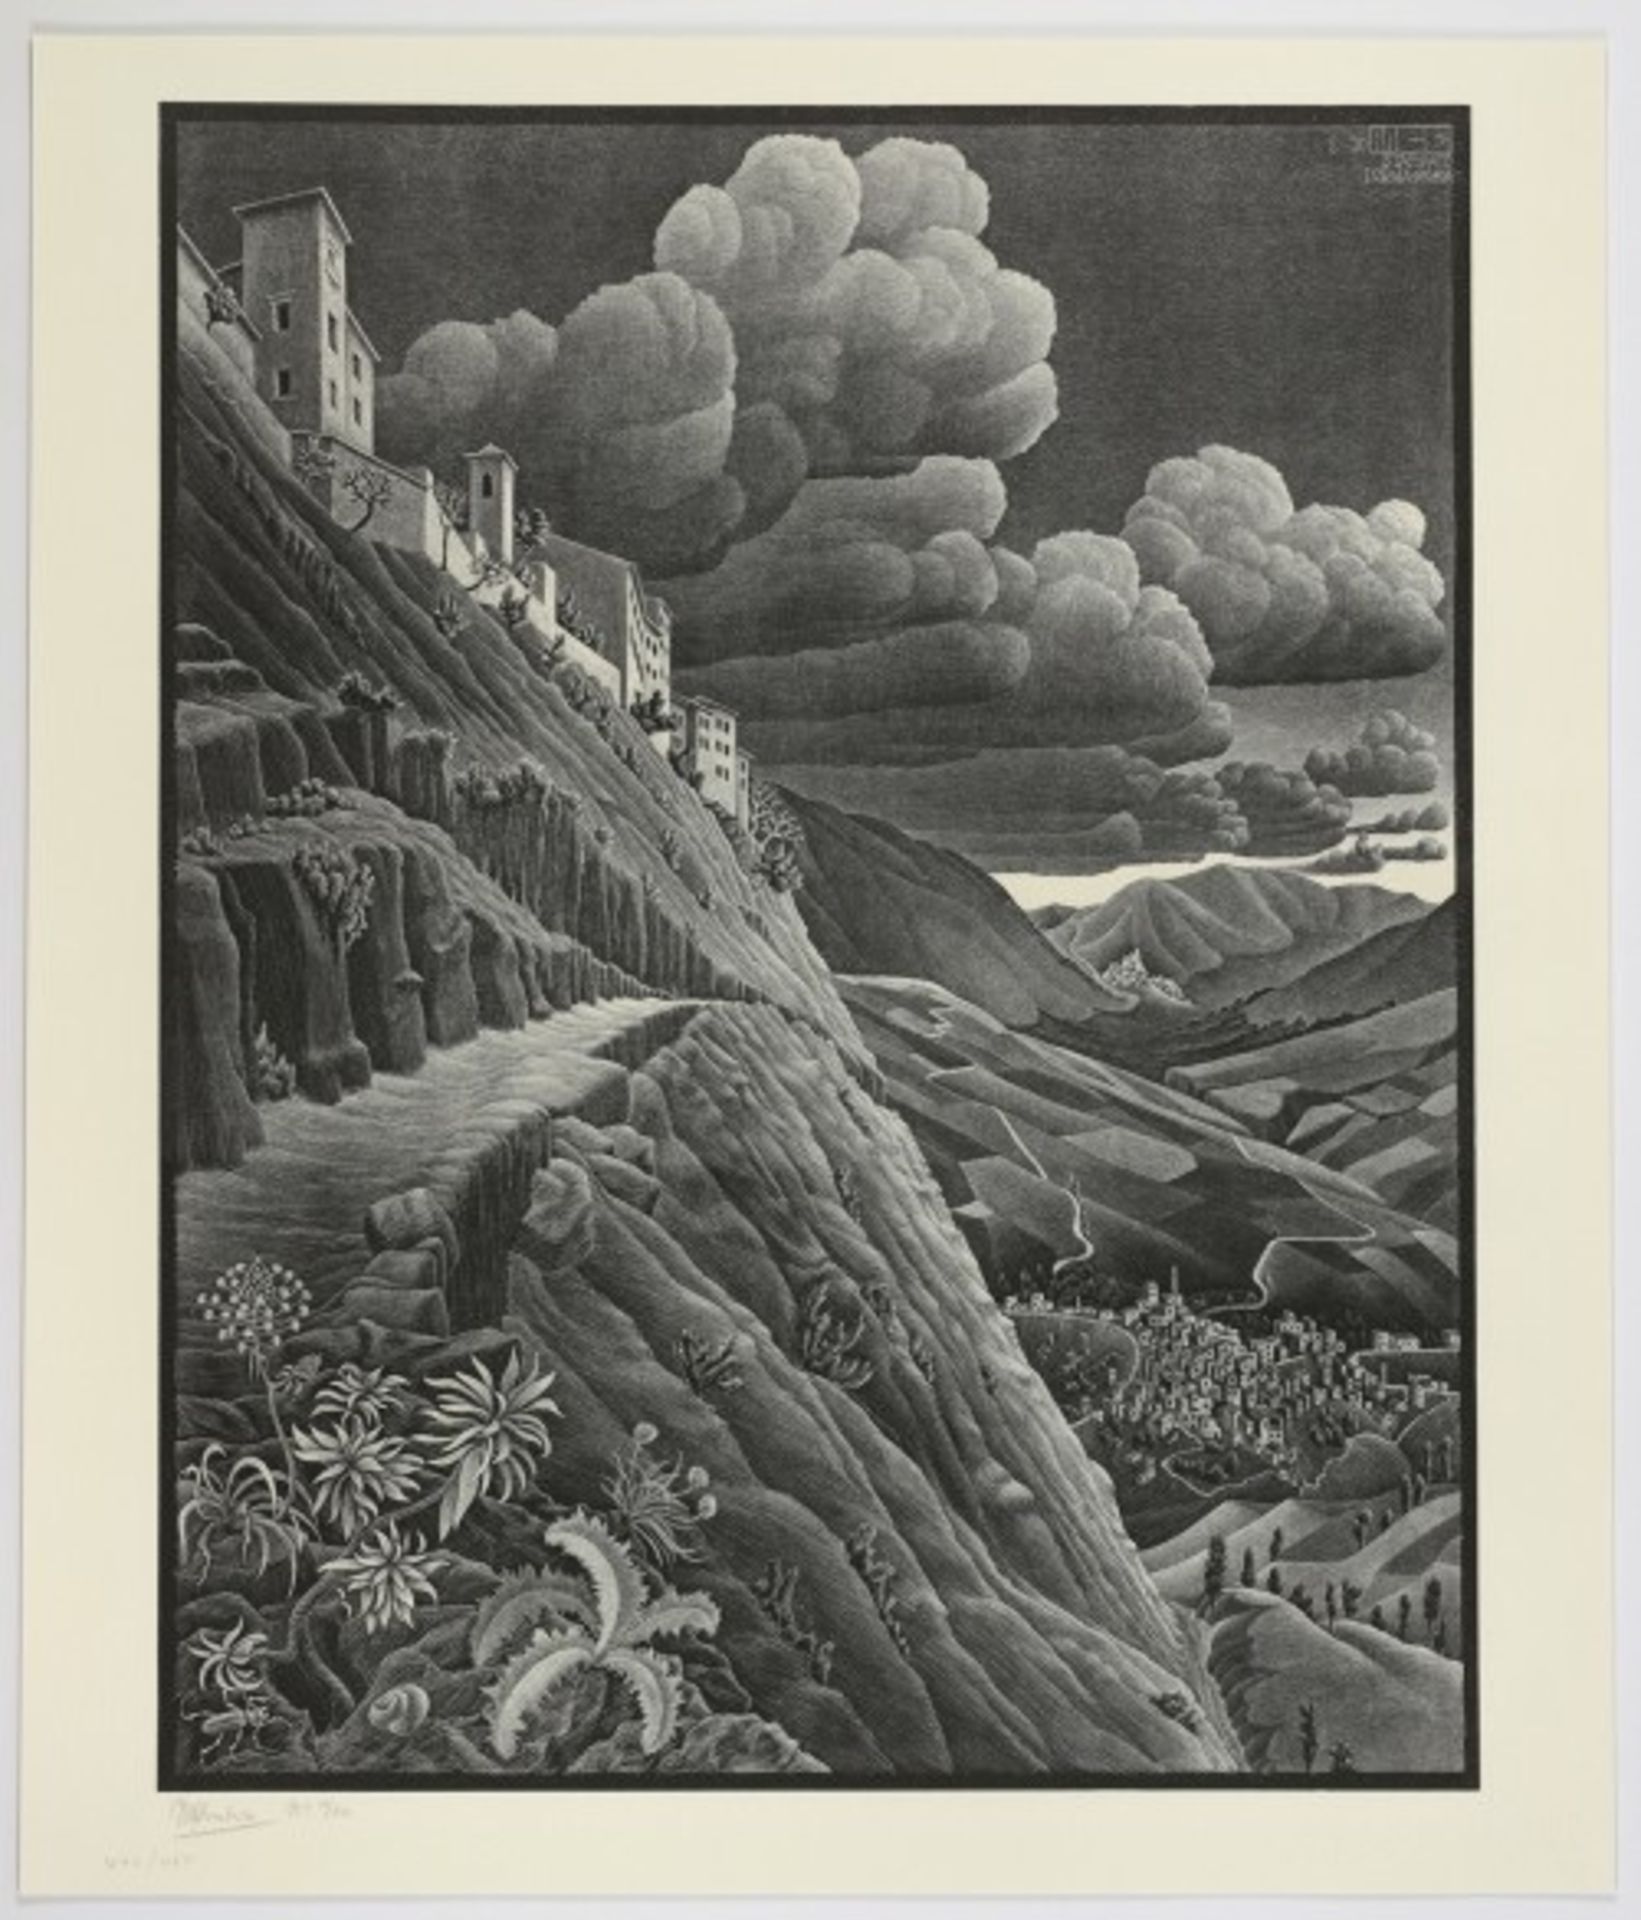 M.C. Escher "Castrovalva" Etching